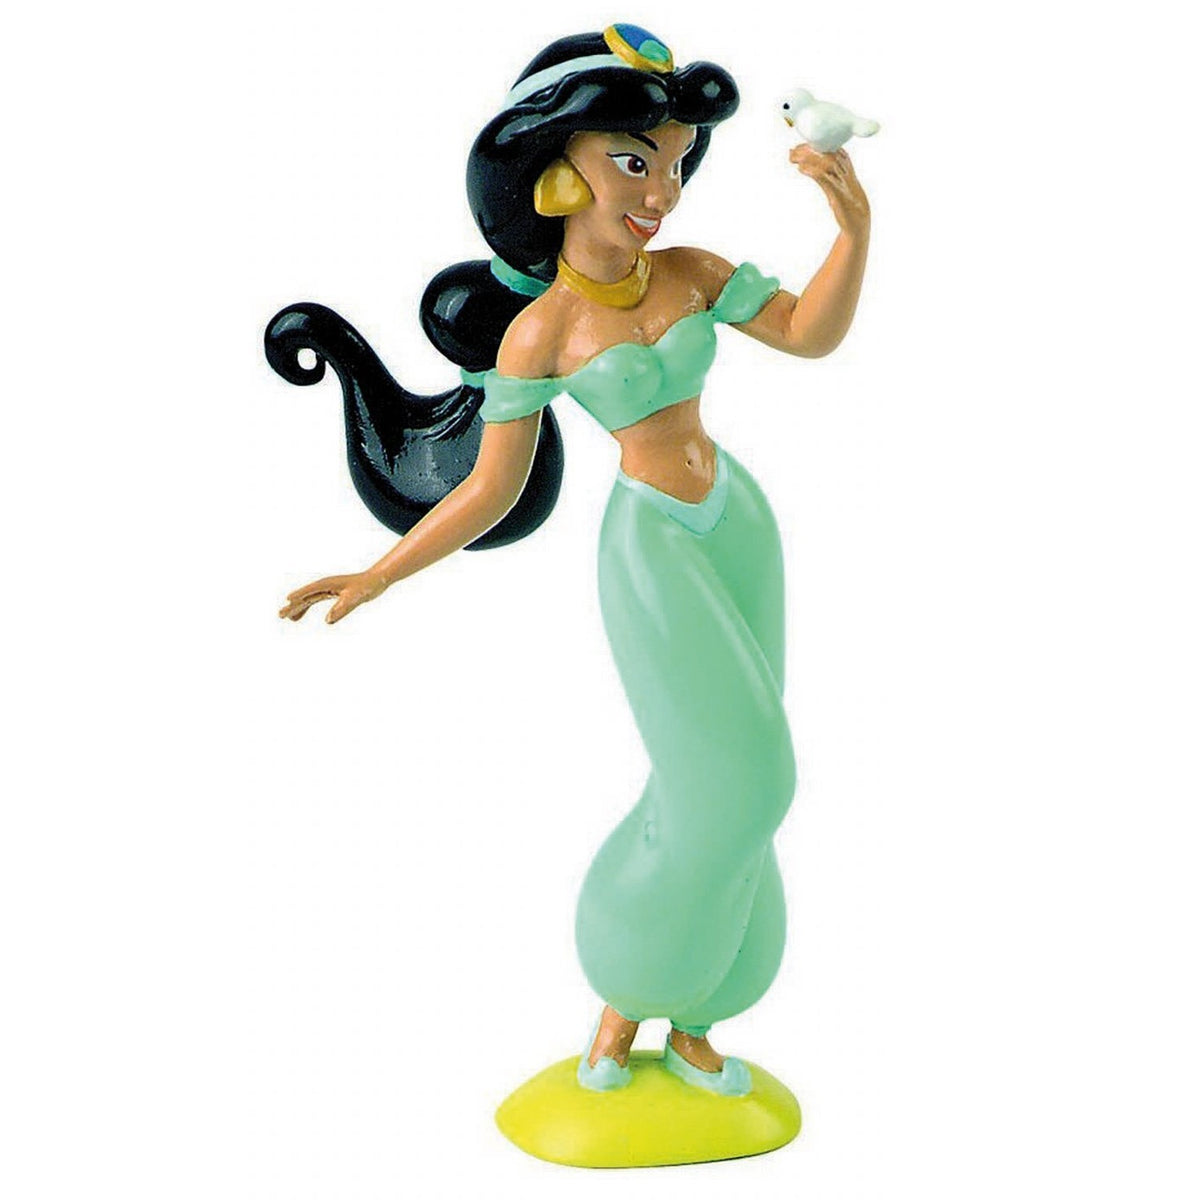 Riproduzione in miniatura del personaggio Walt Disney Aladdin